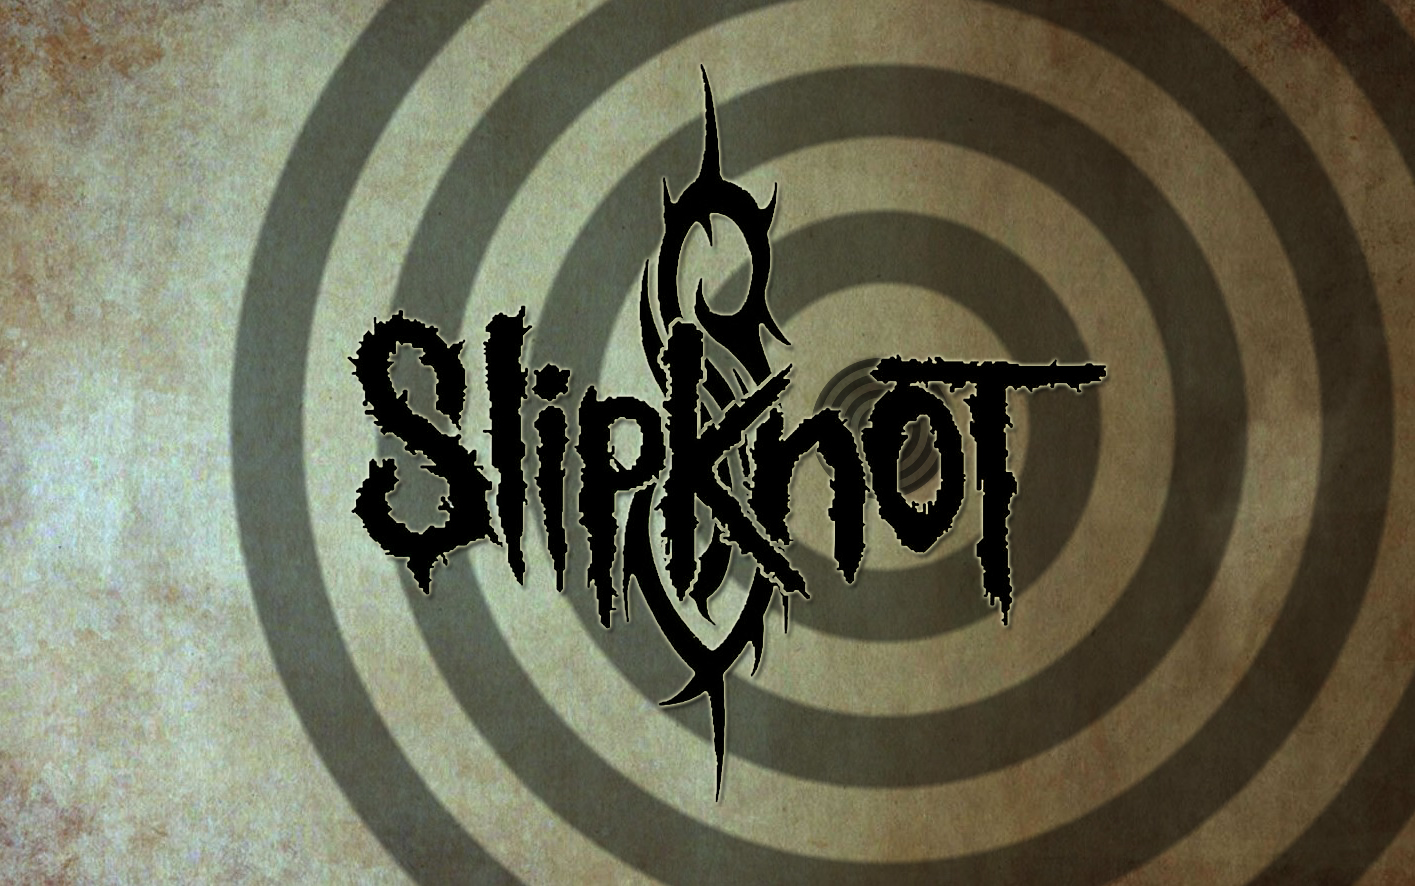 Heavy Metal Industrial Metal Nu Metal Slipknot 1415x886